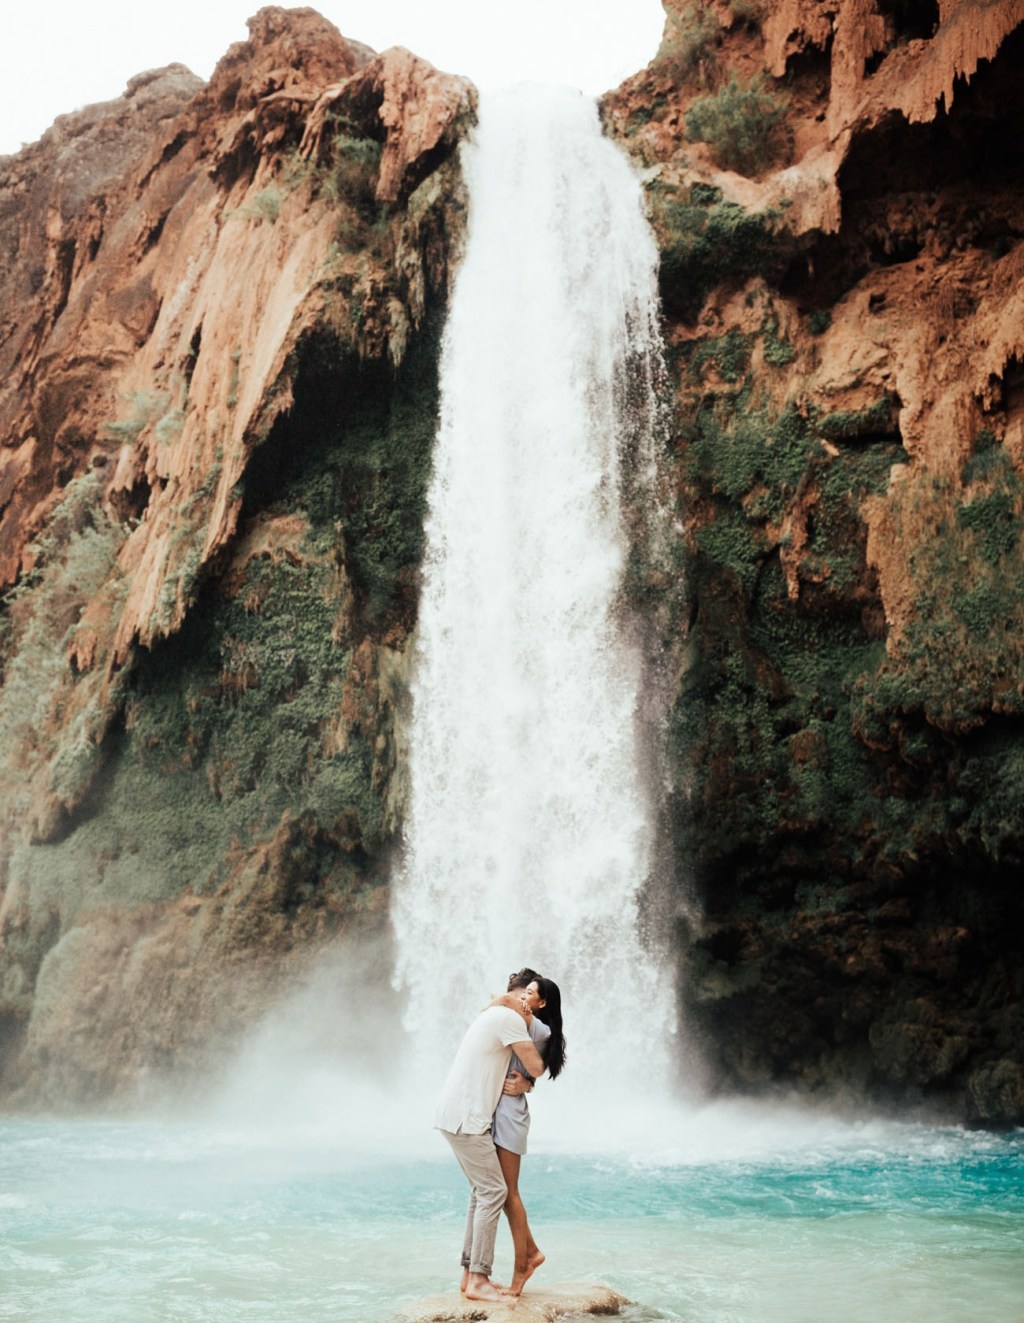 Havasu Falls Arizona honeymoon destinations in the US